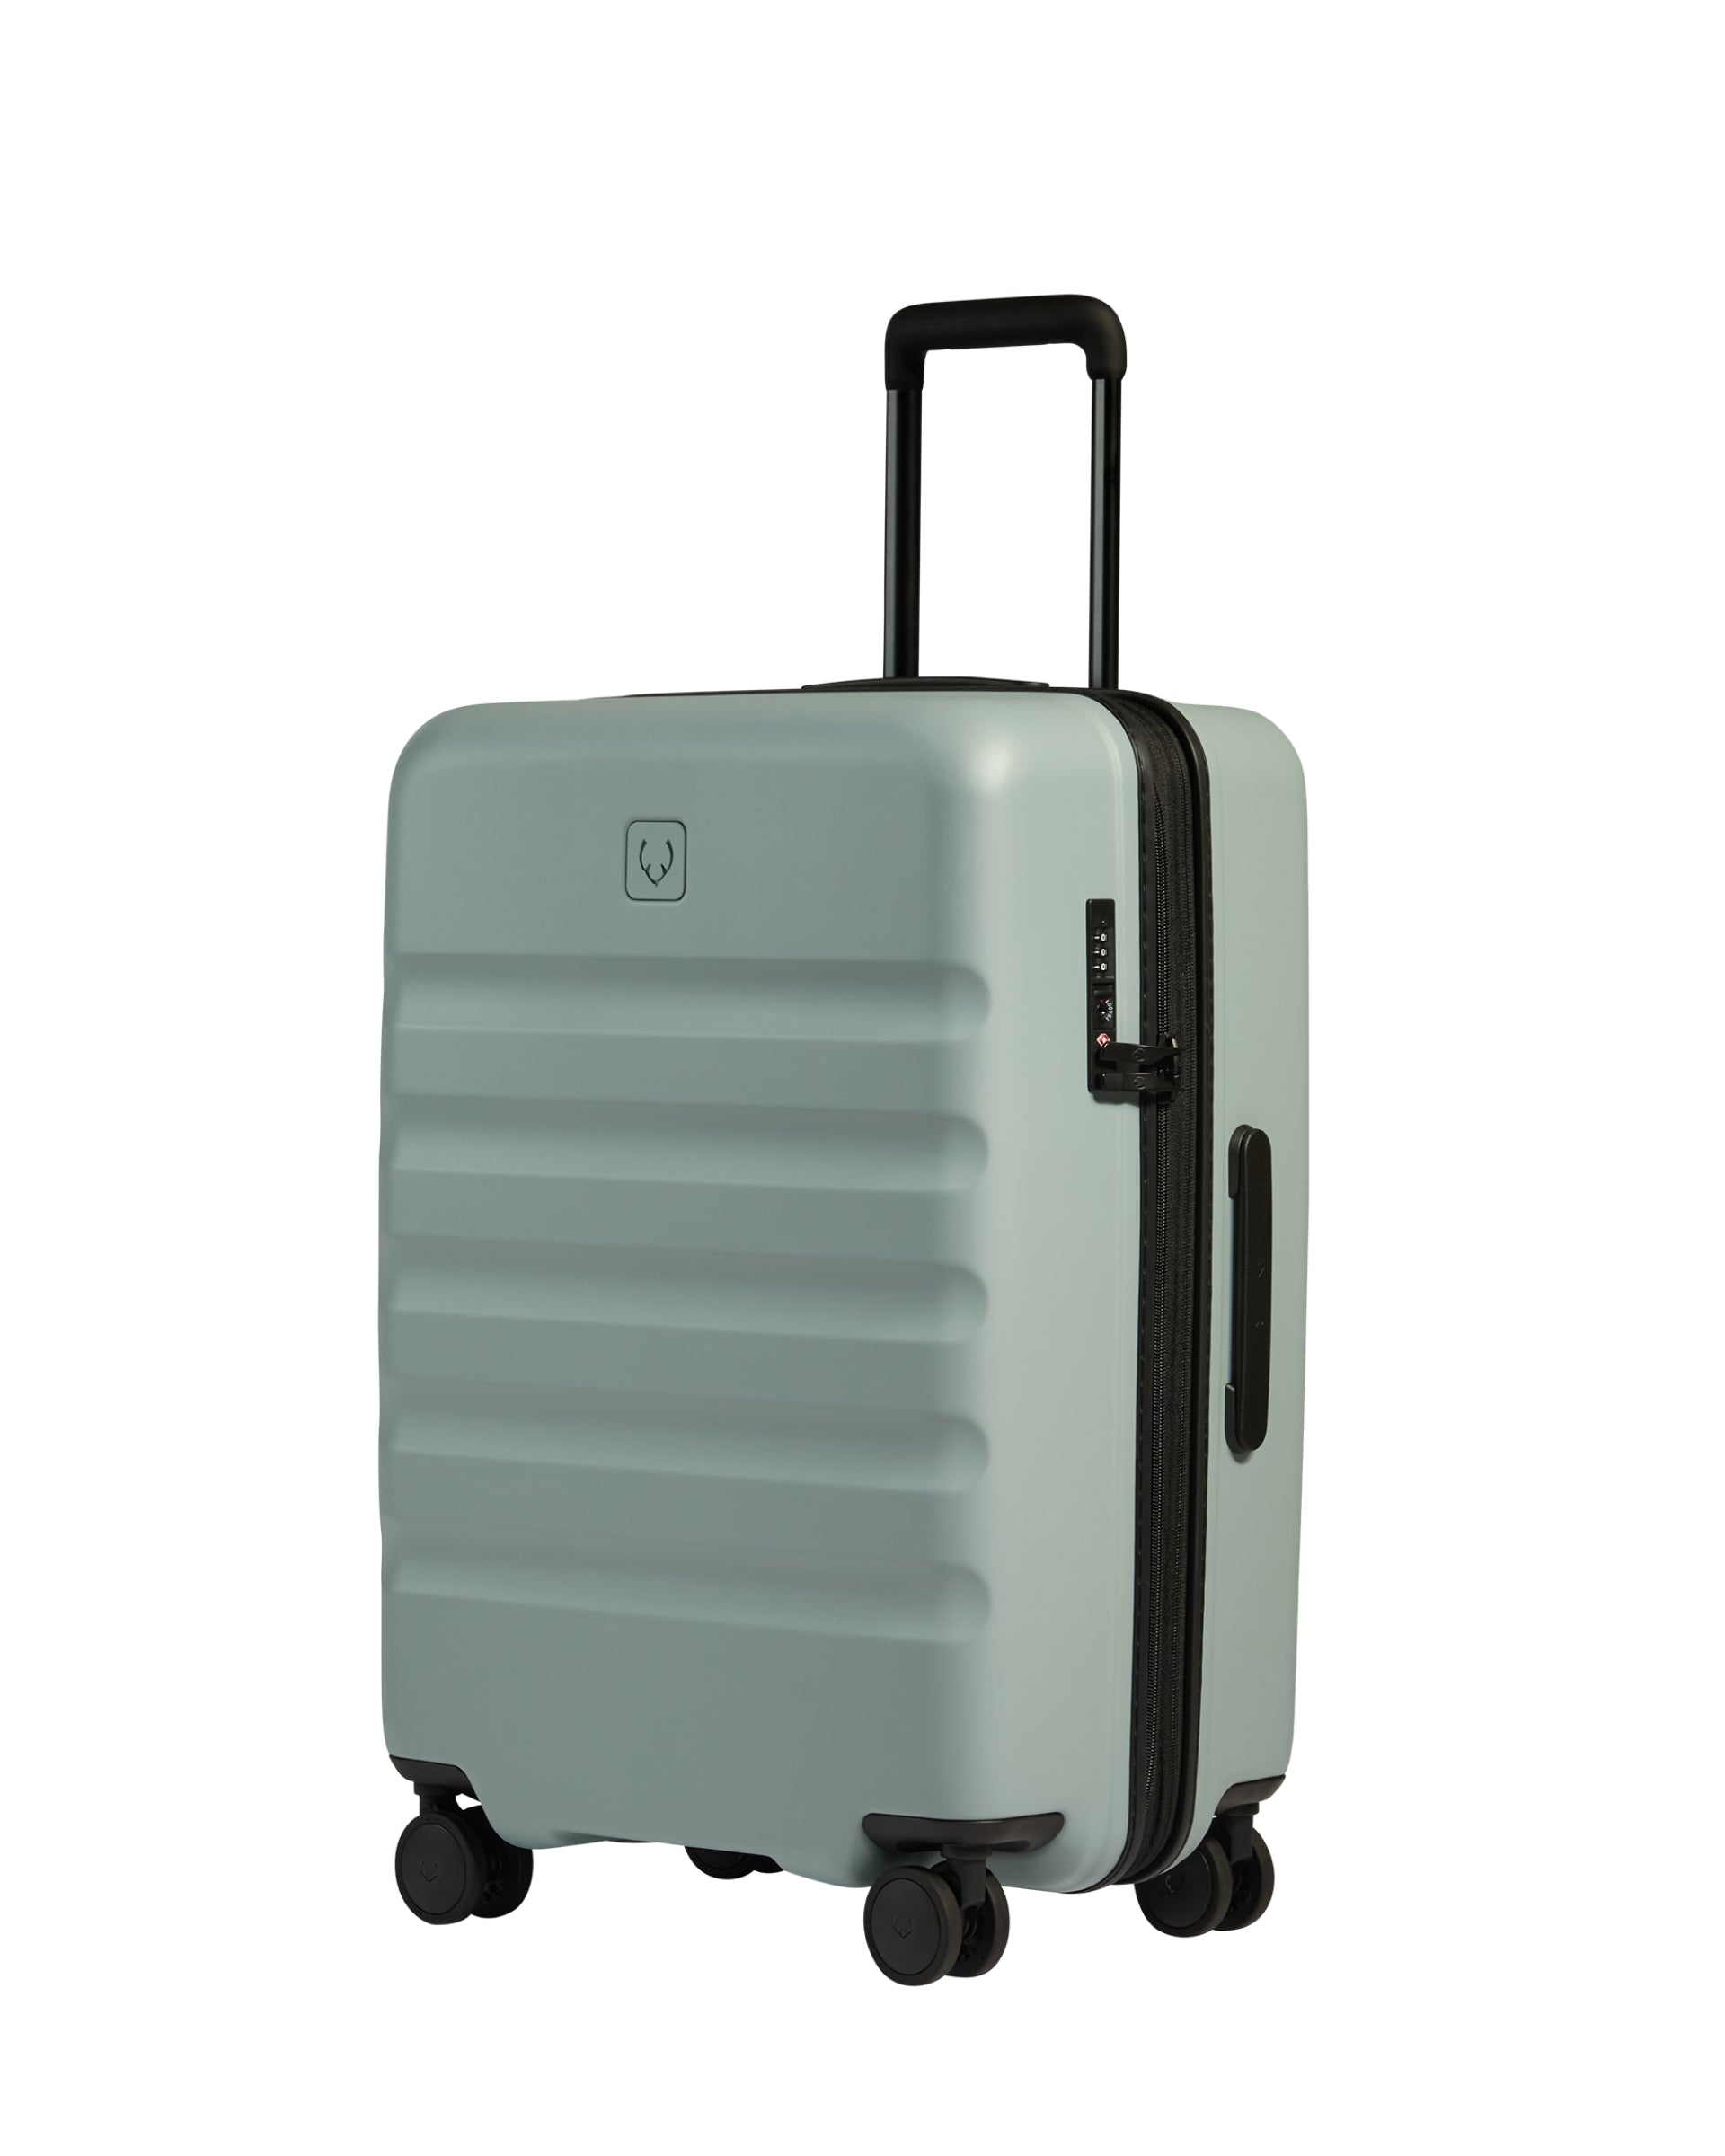 View Antler Icon Stripe Medium Suitcase In Mist Blue Size 455cm x 66cm x 30cm information